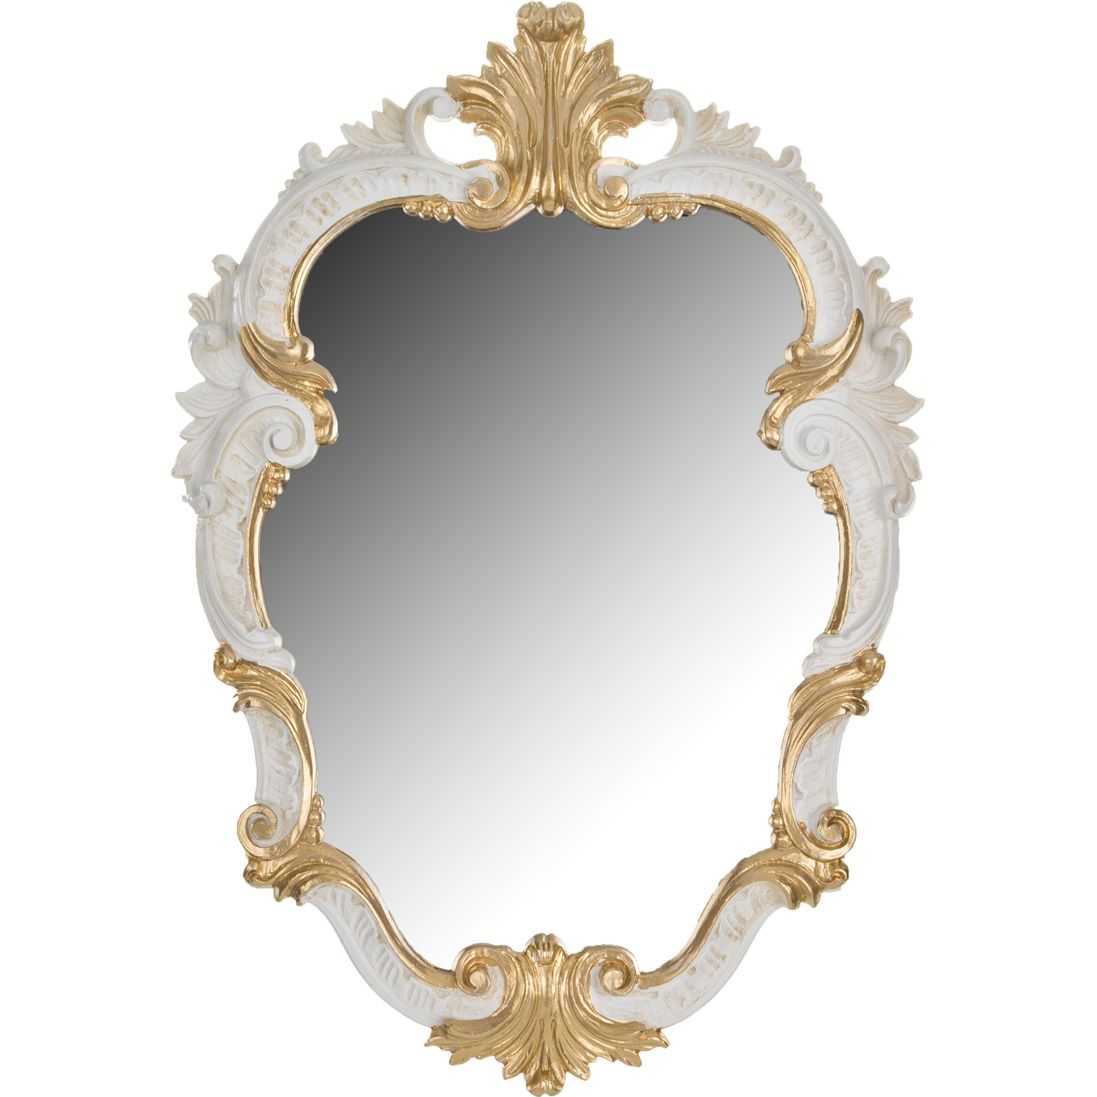 Купить зеркало настенное в спб. 290-003 Зеркало. C475-SP-AP Euromarchi зеркало. Зеркало в рамке "Ажур"(585х470мм) м1656. Зеркало настенное.